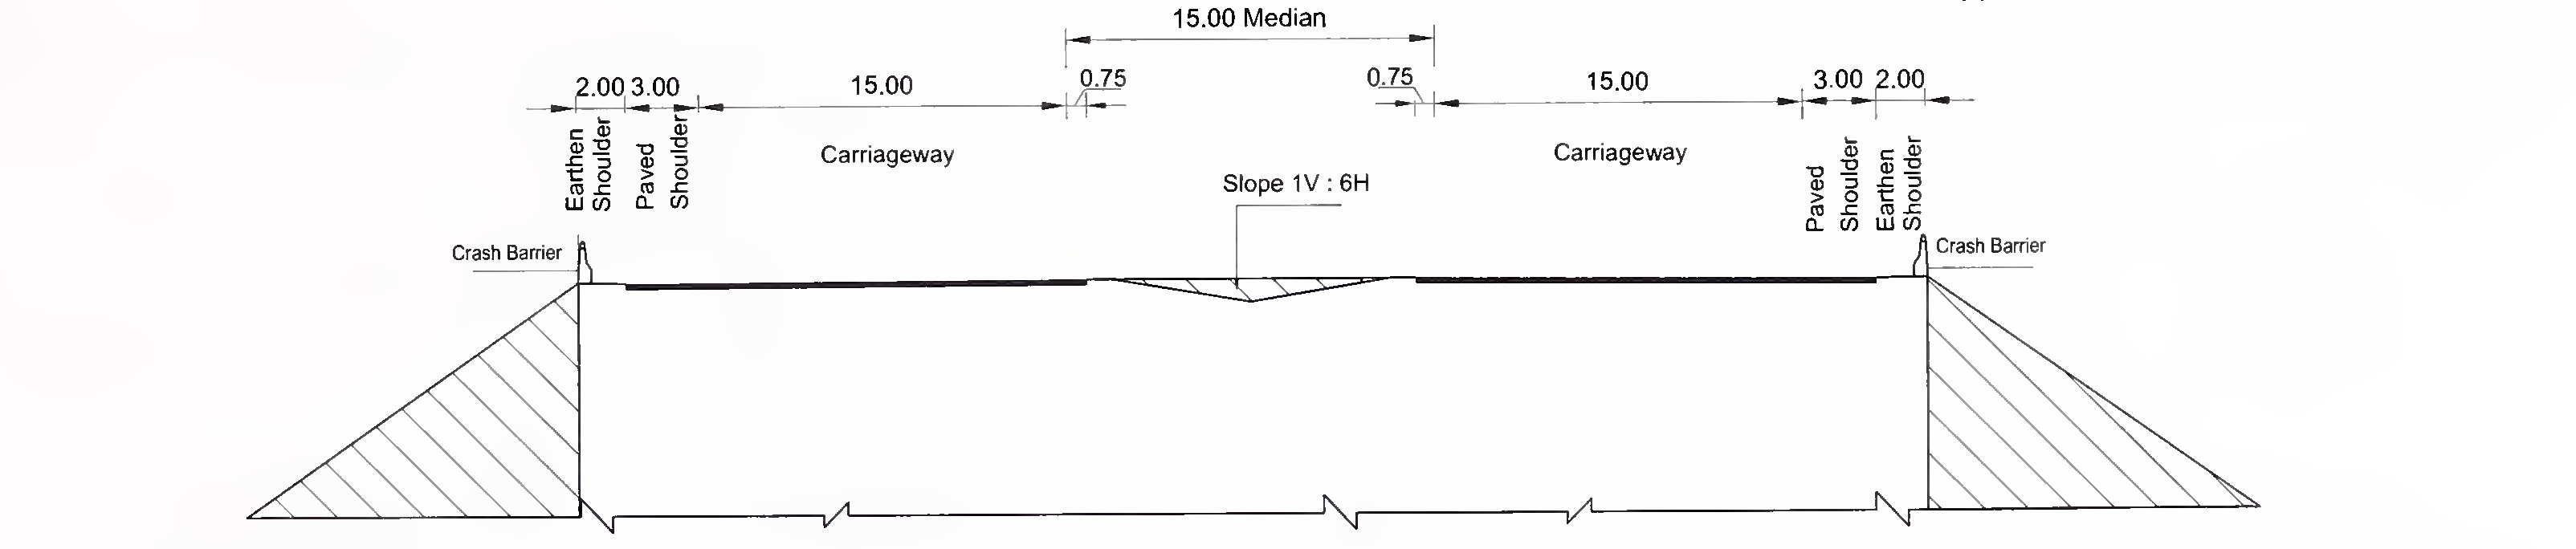 চিত্র 6.3 (সি) 8-লেনের জন্য স্ল্যাব এবং বক্স প্রকারের কালভার্টের সাধারণ ক্রস-বিভাগটি (2 × 4) অবসন্ন মেডিয়ান সহ এক্সপ্রেসওয়ে